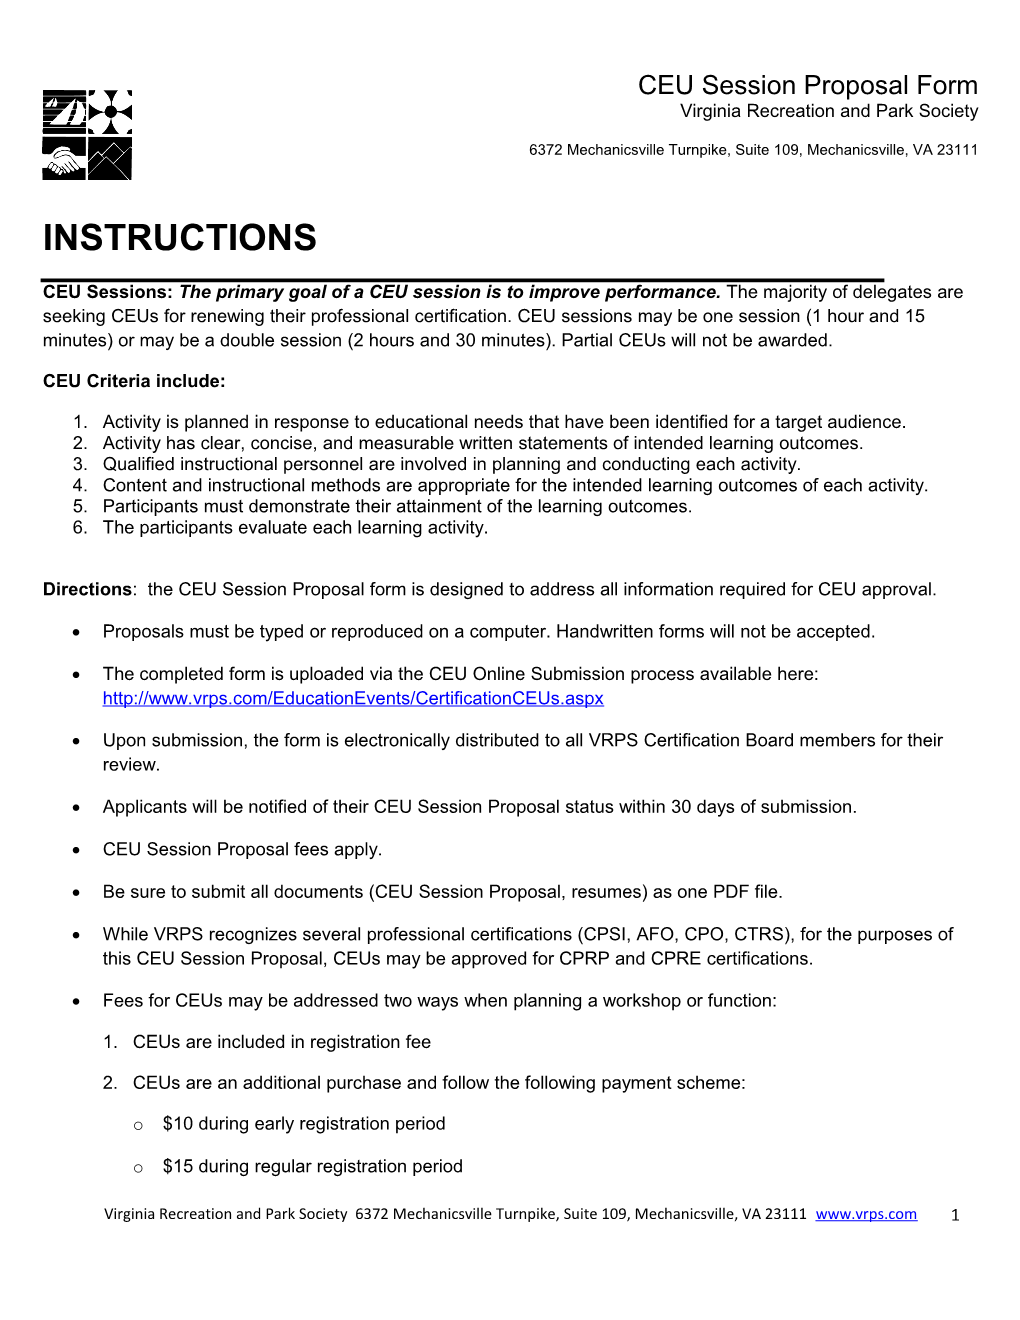 VRPS Session Proposal Form - 2013